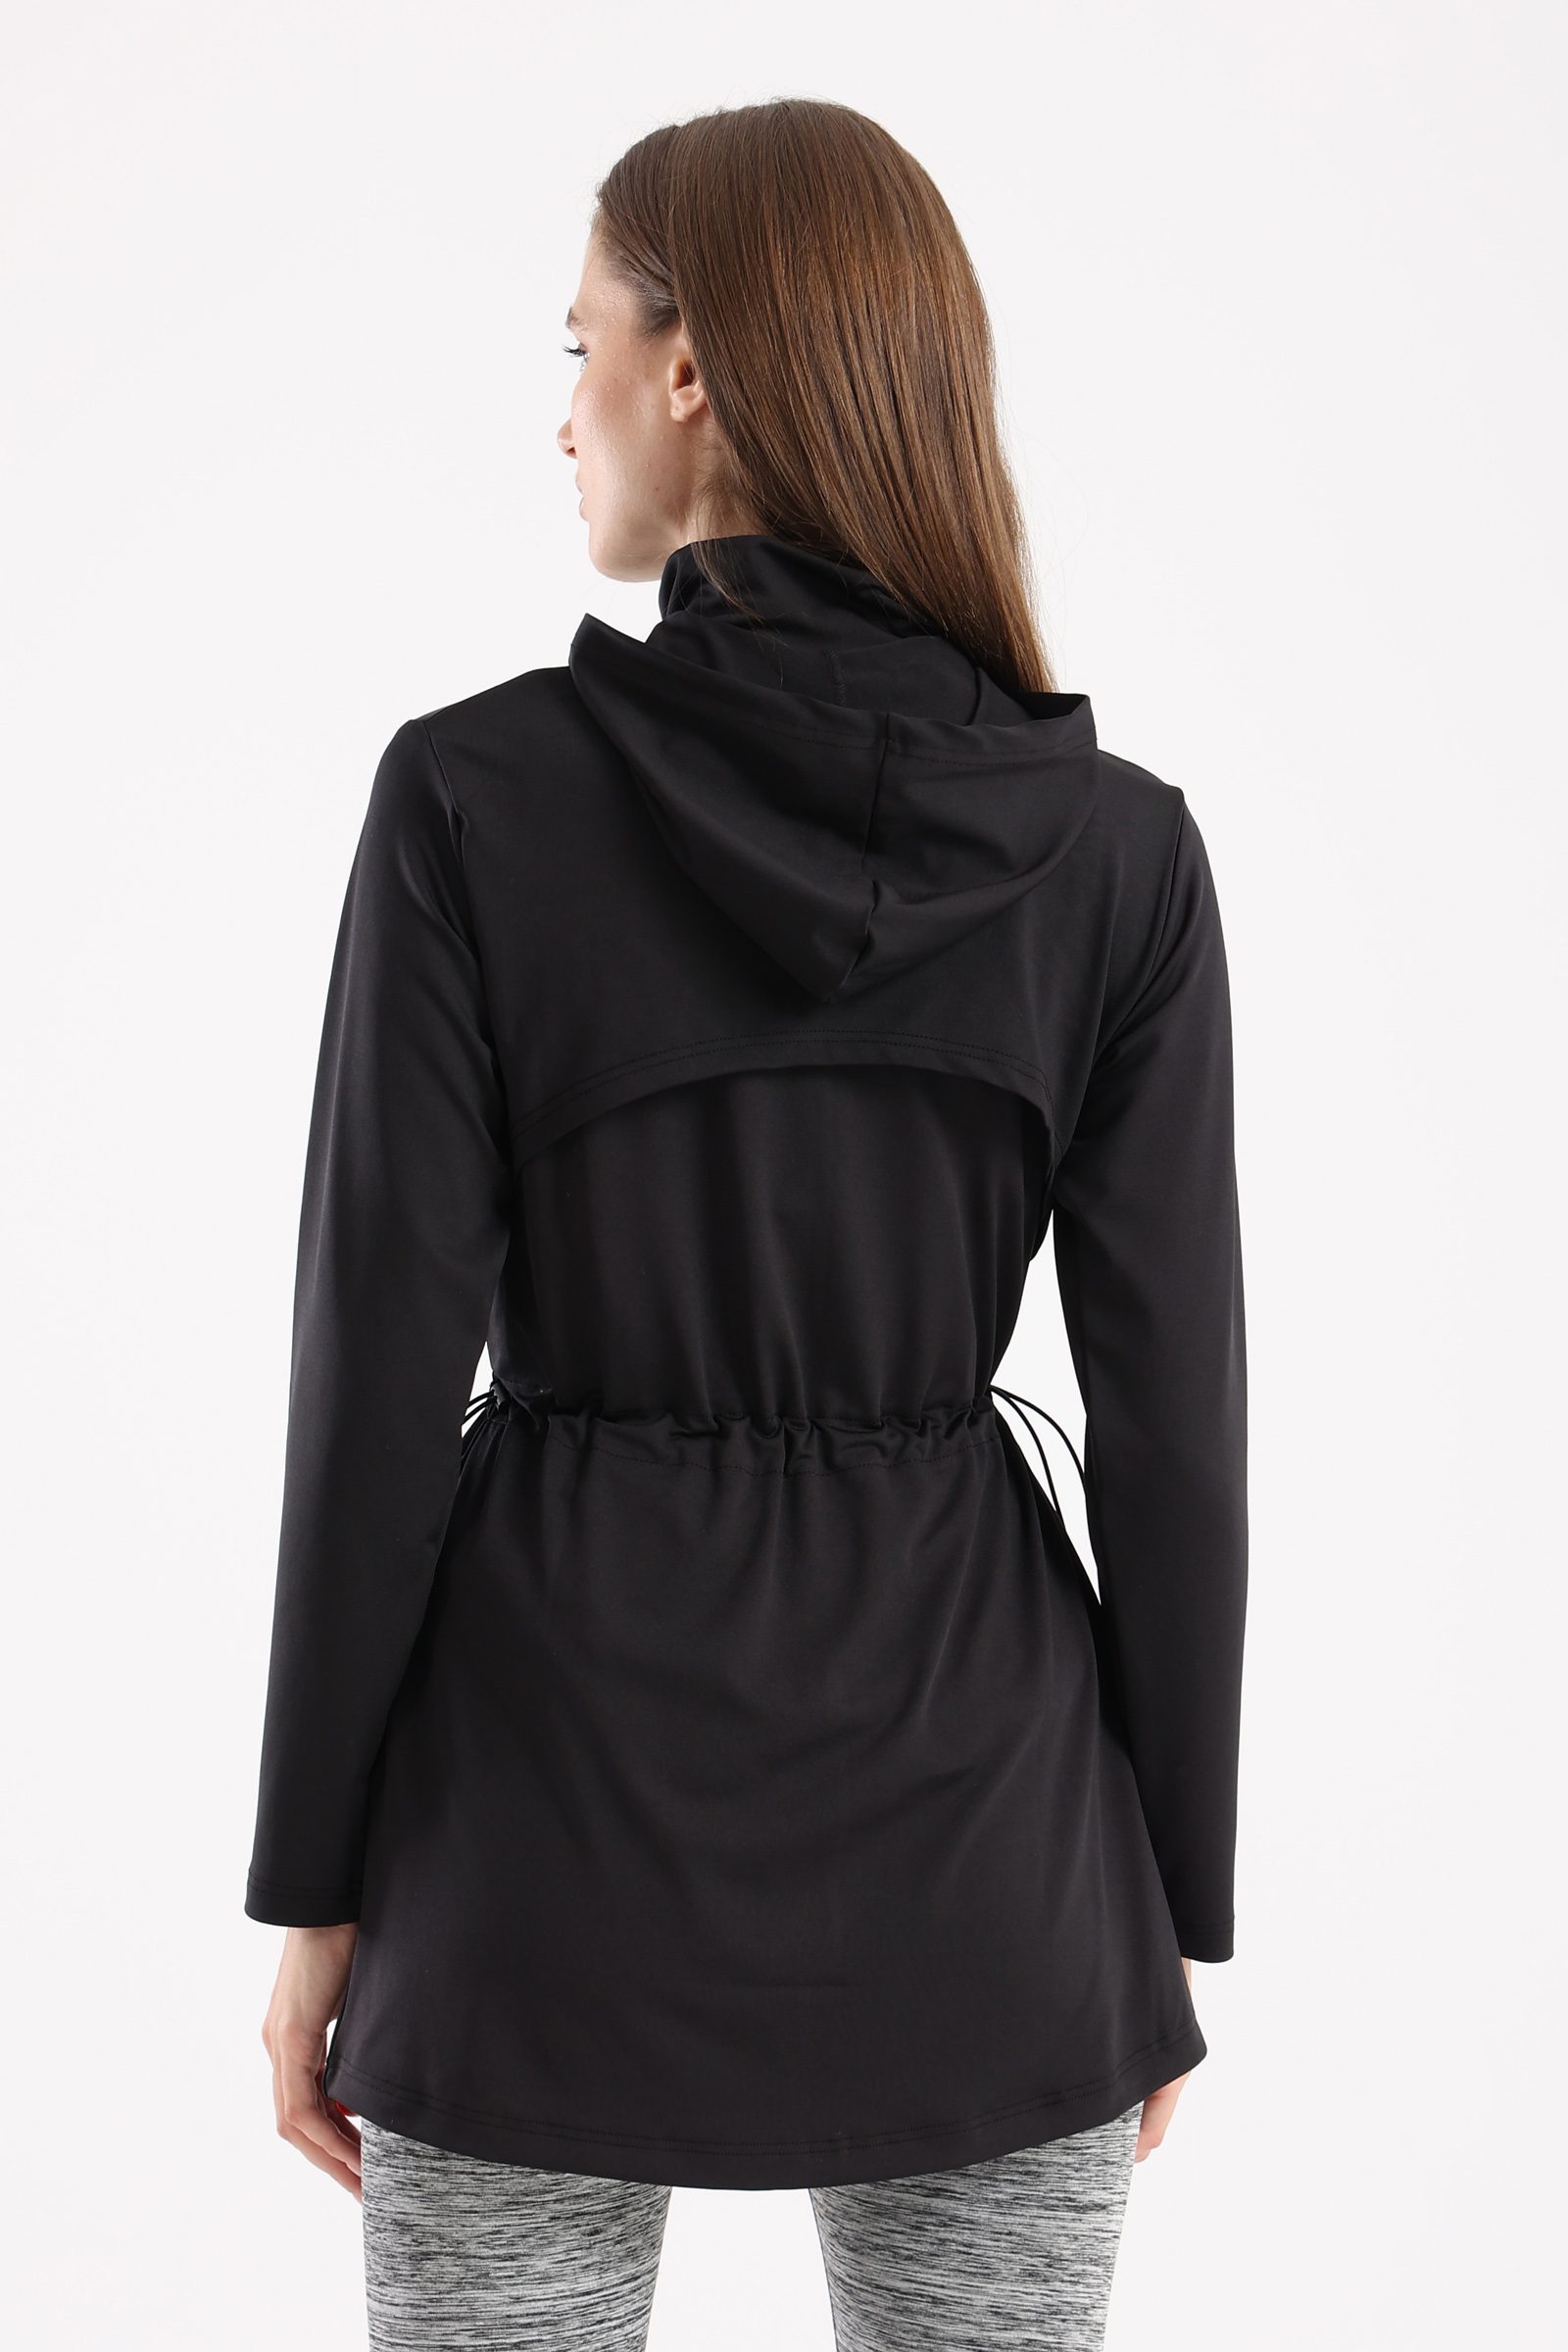 Black drawstring oversized jacket – Fit Freak